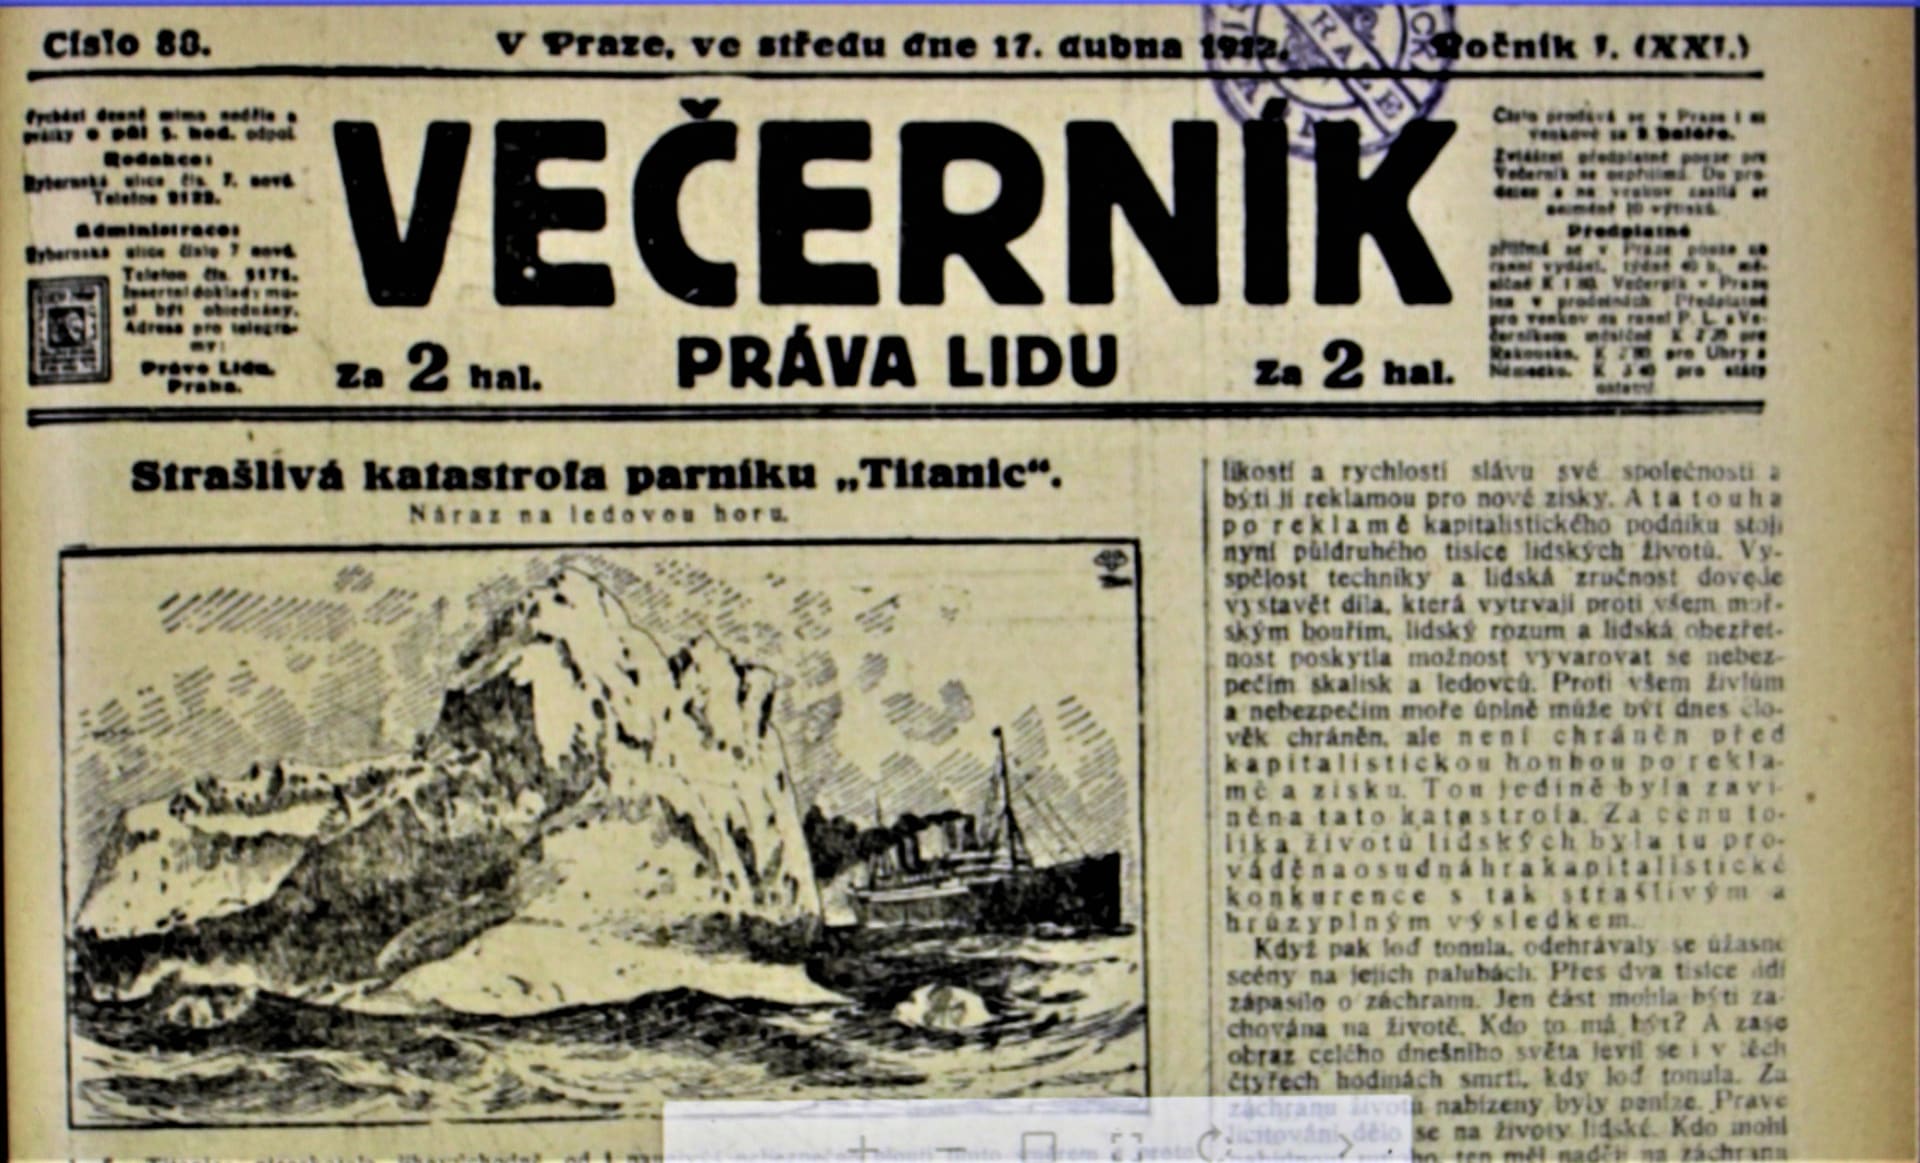 Zprávy a ilustrace z dobového českého tisku z dubna 1912 pocházejí z veřejného digitálního archivu Národní knihovny v Praze.